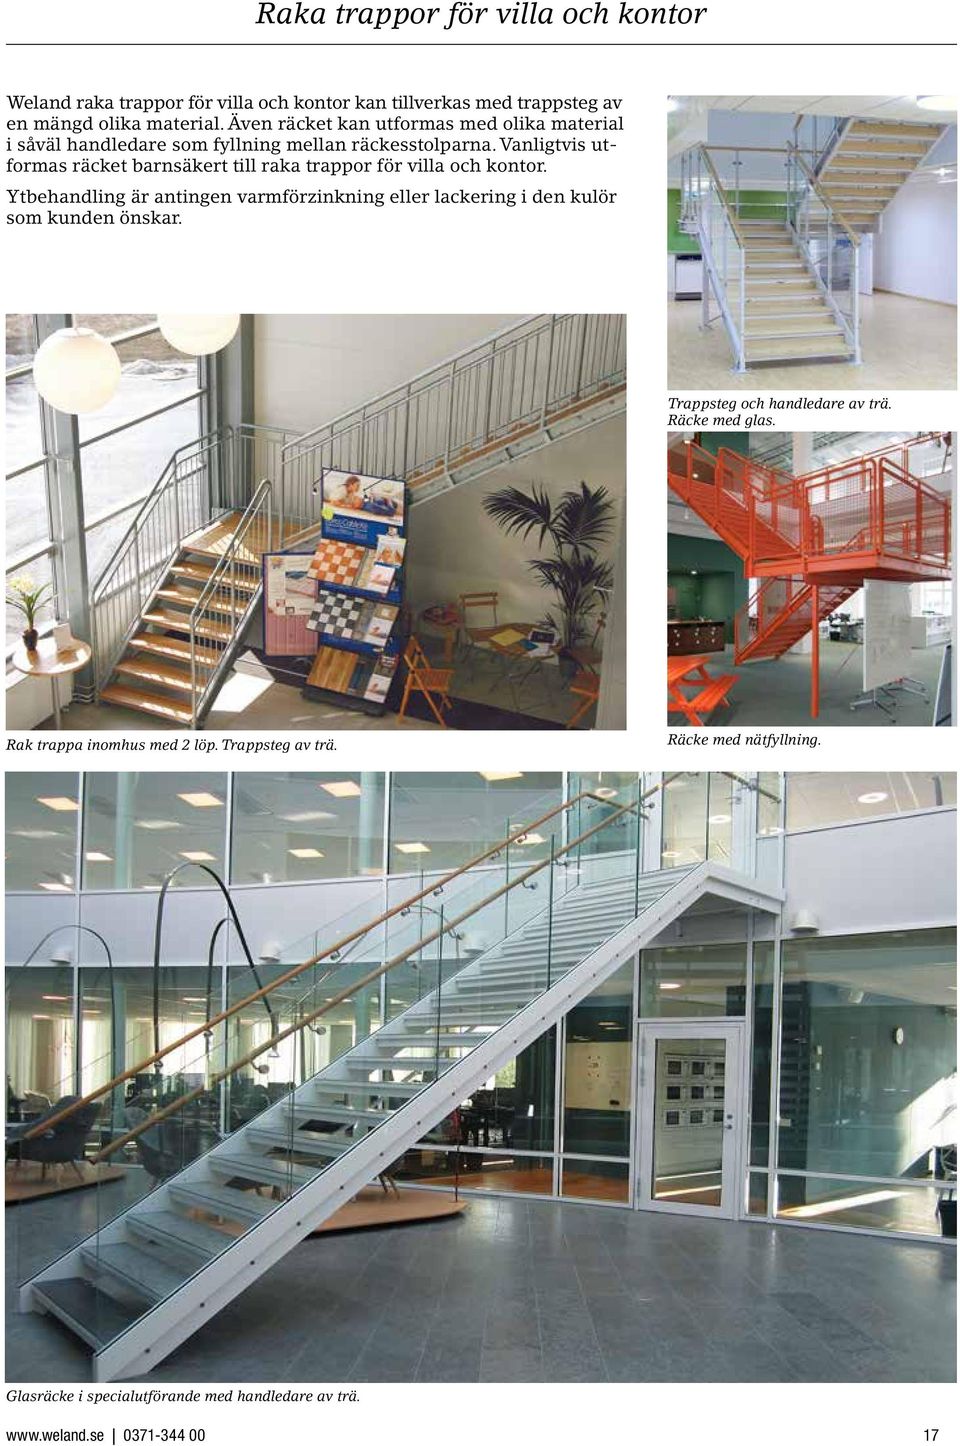 Vanligtvis utformas räcket barnsäkert till raka trappor för villa och kontor.